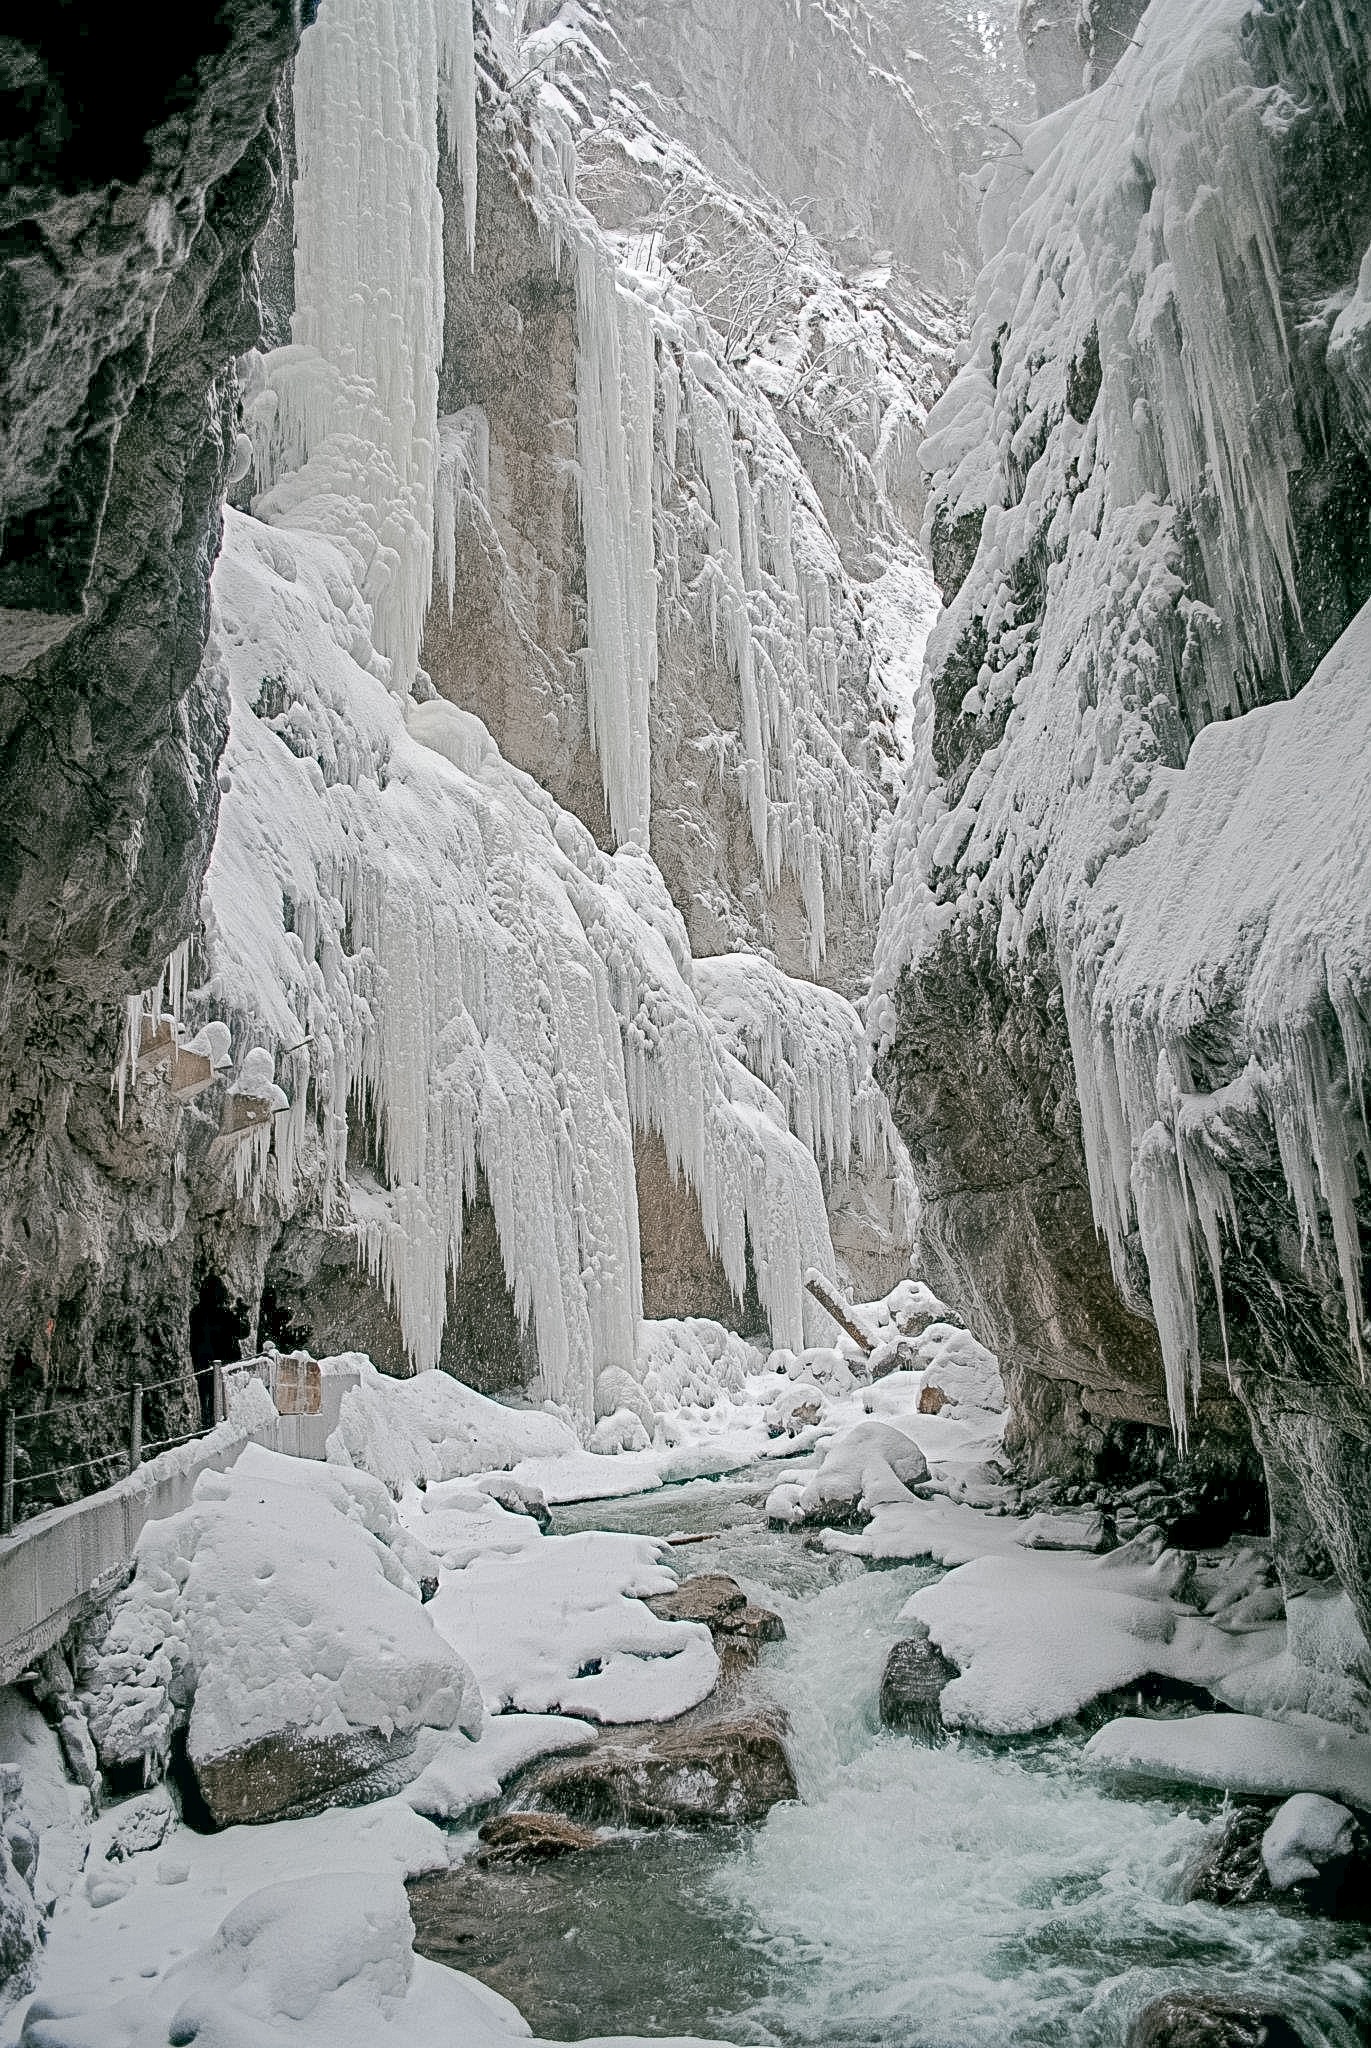 Partnachklamm gorge in Garmisch-Partenkirchen, Bavaria, in winter.